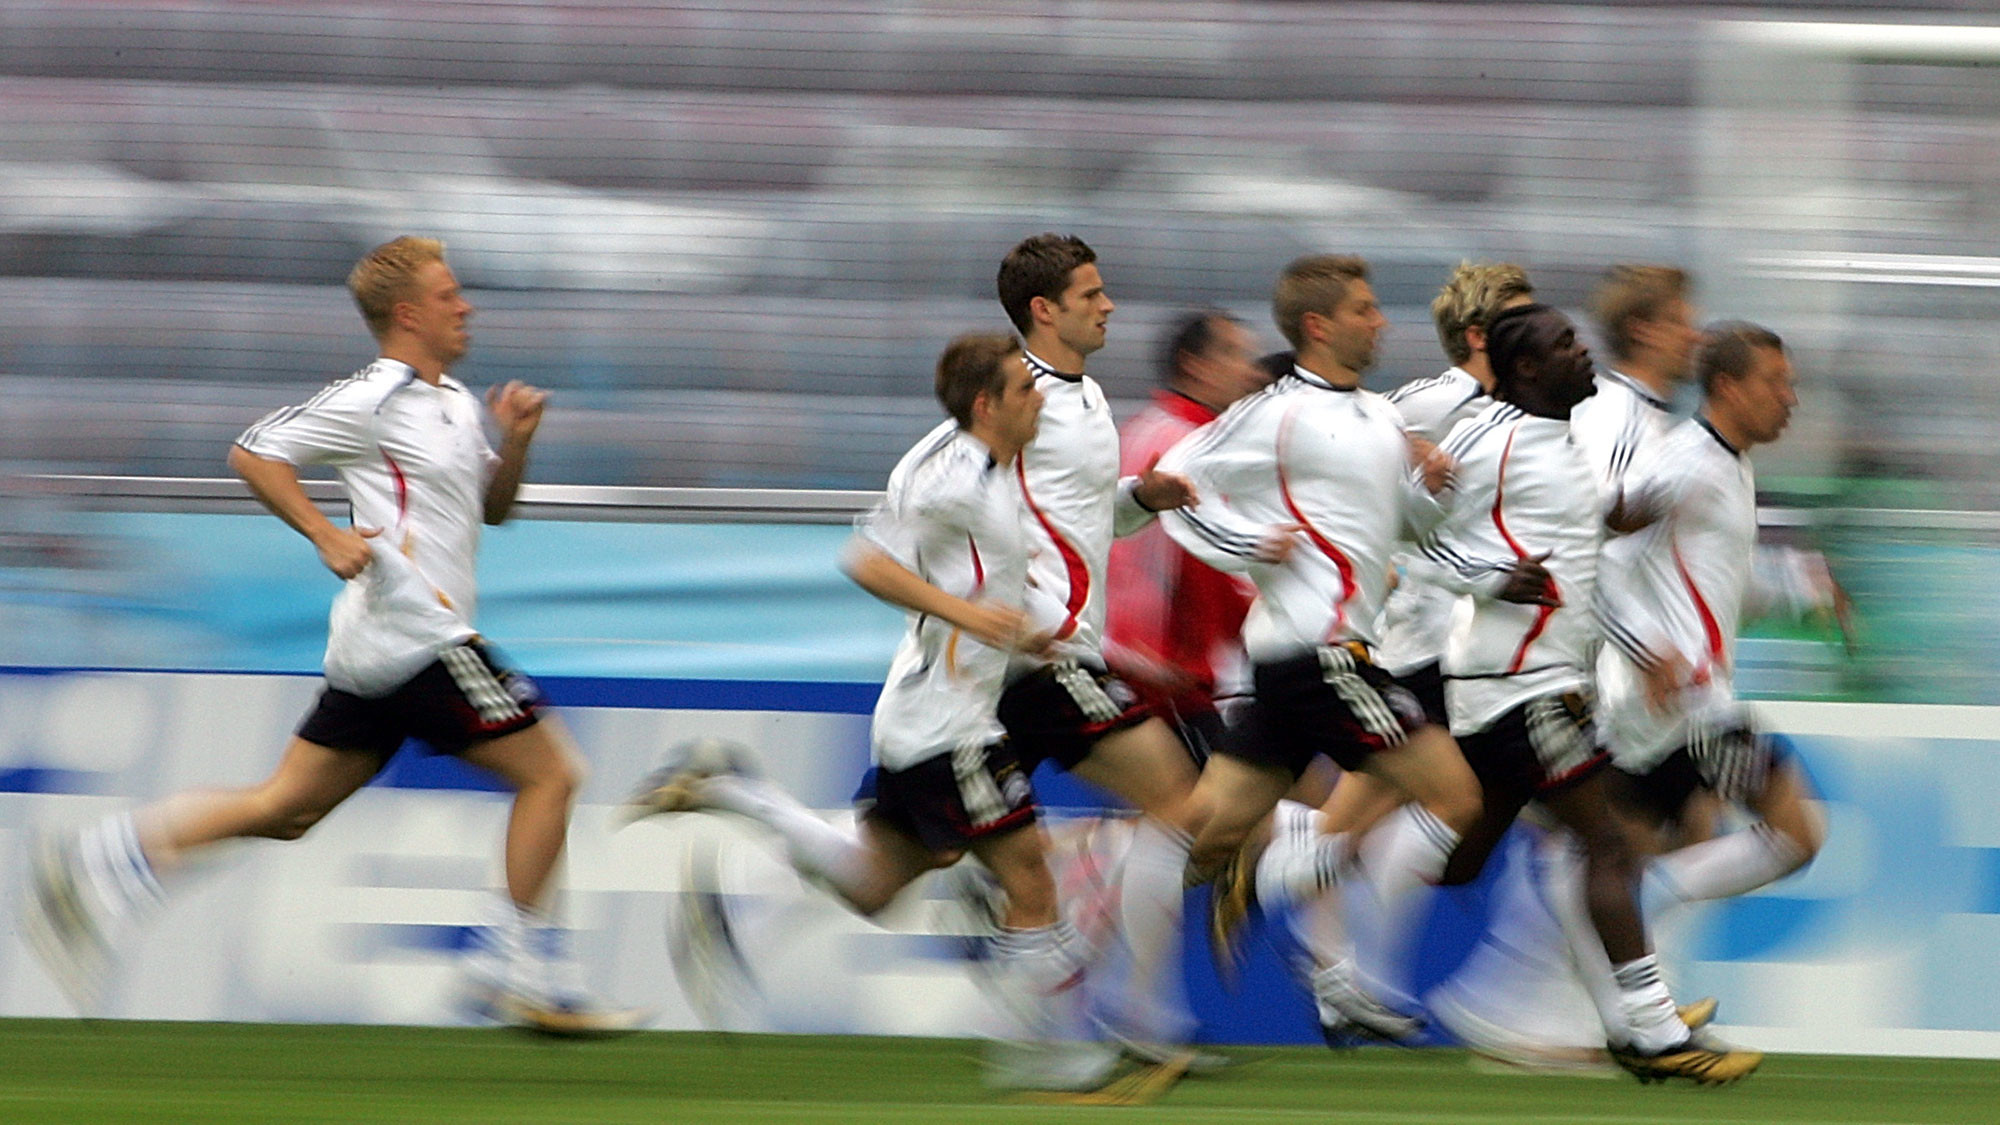 Футболисты сборной Германии бегут во время тренировки на стадионе чемпионата мира по футболу в Мюнхене, Германия, 8 июня 2006 года. Фото: © AP Photo/Yun Jai-hyoung